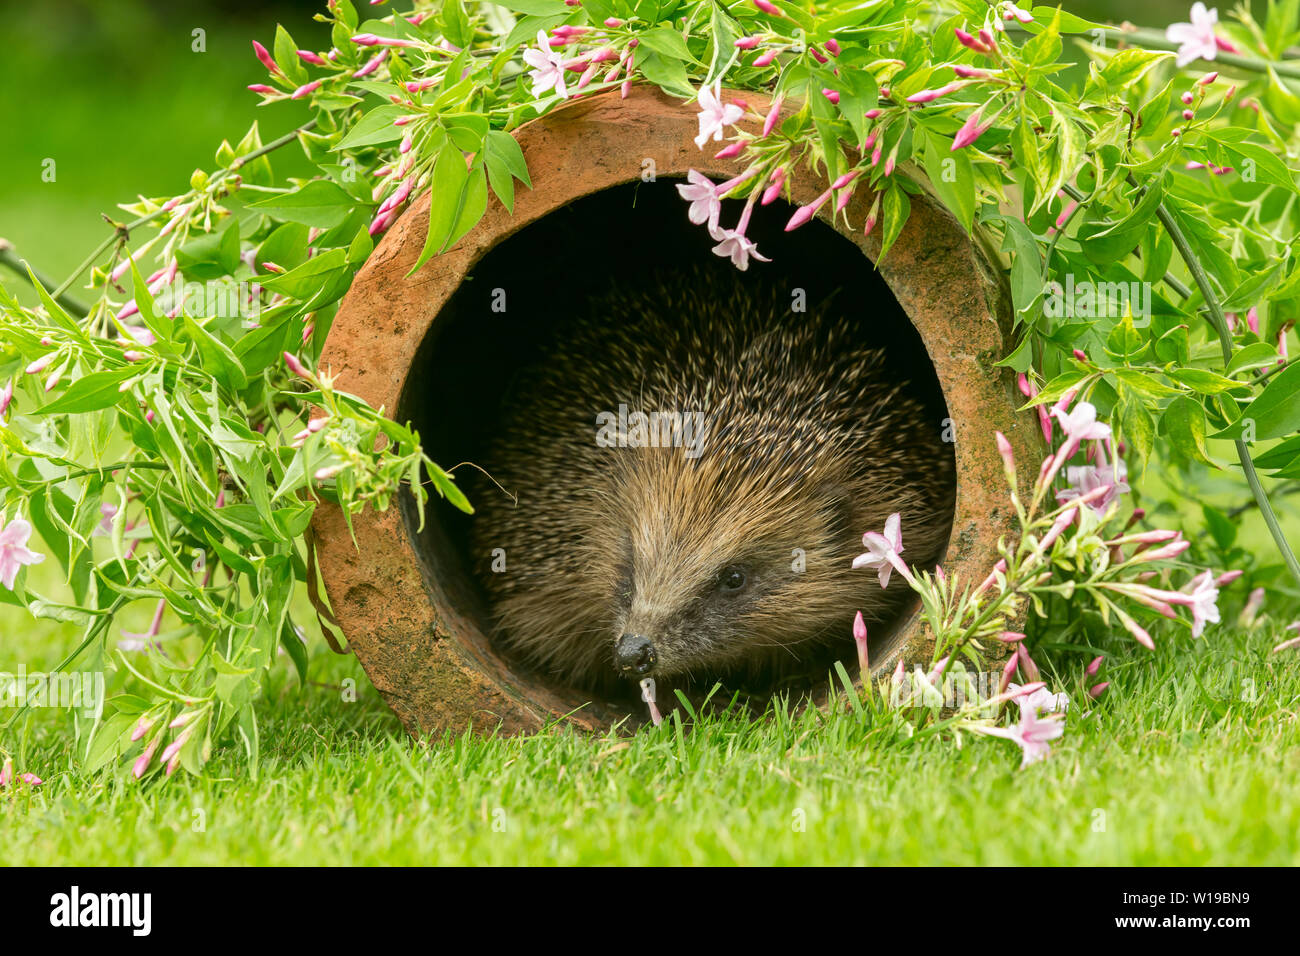 Riccio (Erinaceus europaeus) Selvatica, hedgehog nativo nel giardino naturale habitat con la fioritura di rosa fiori di gelsomino. Paesaggio. Spazio per la copia. Foto Stock